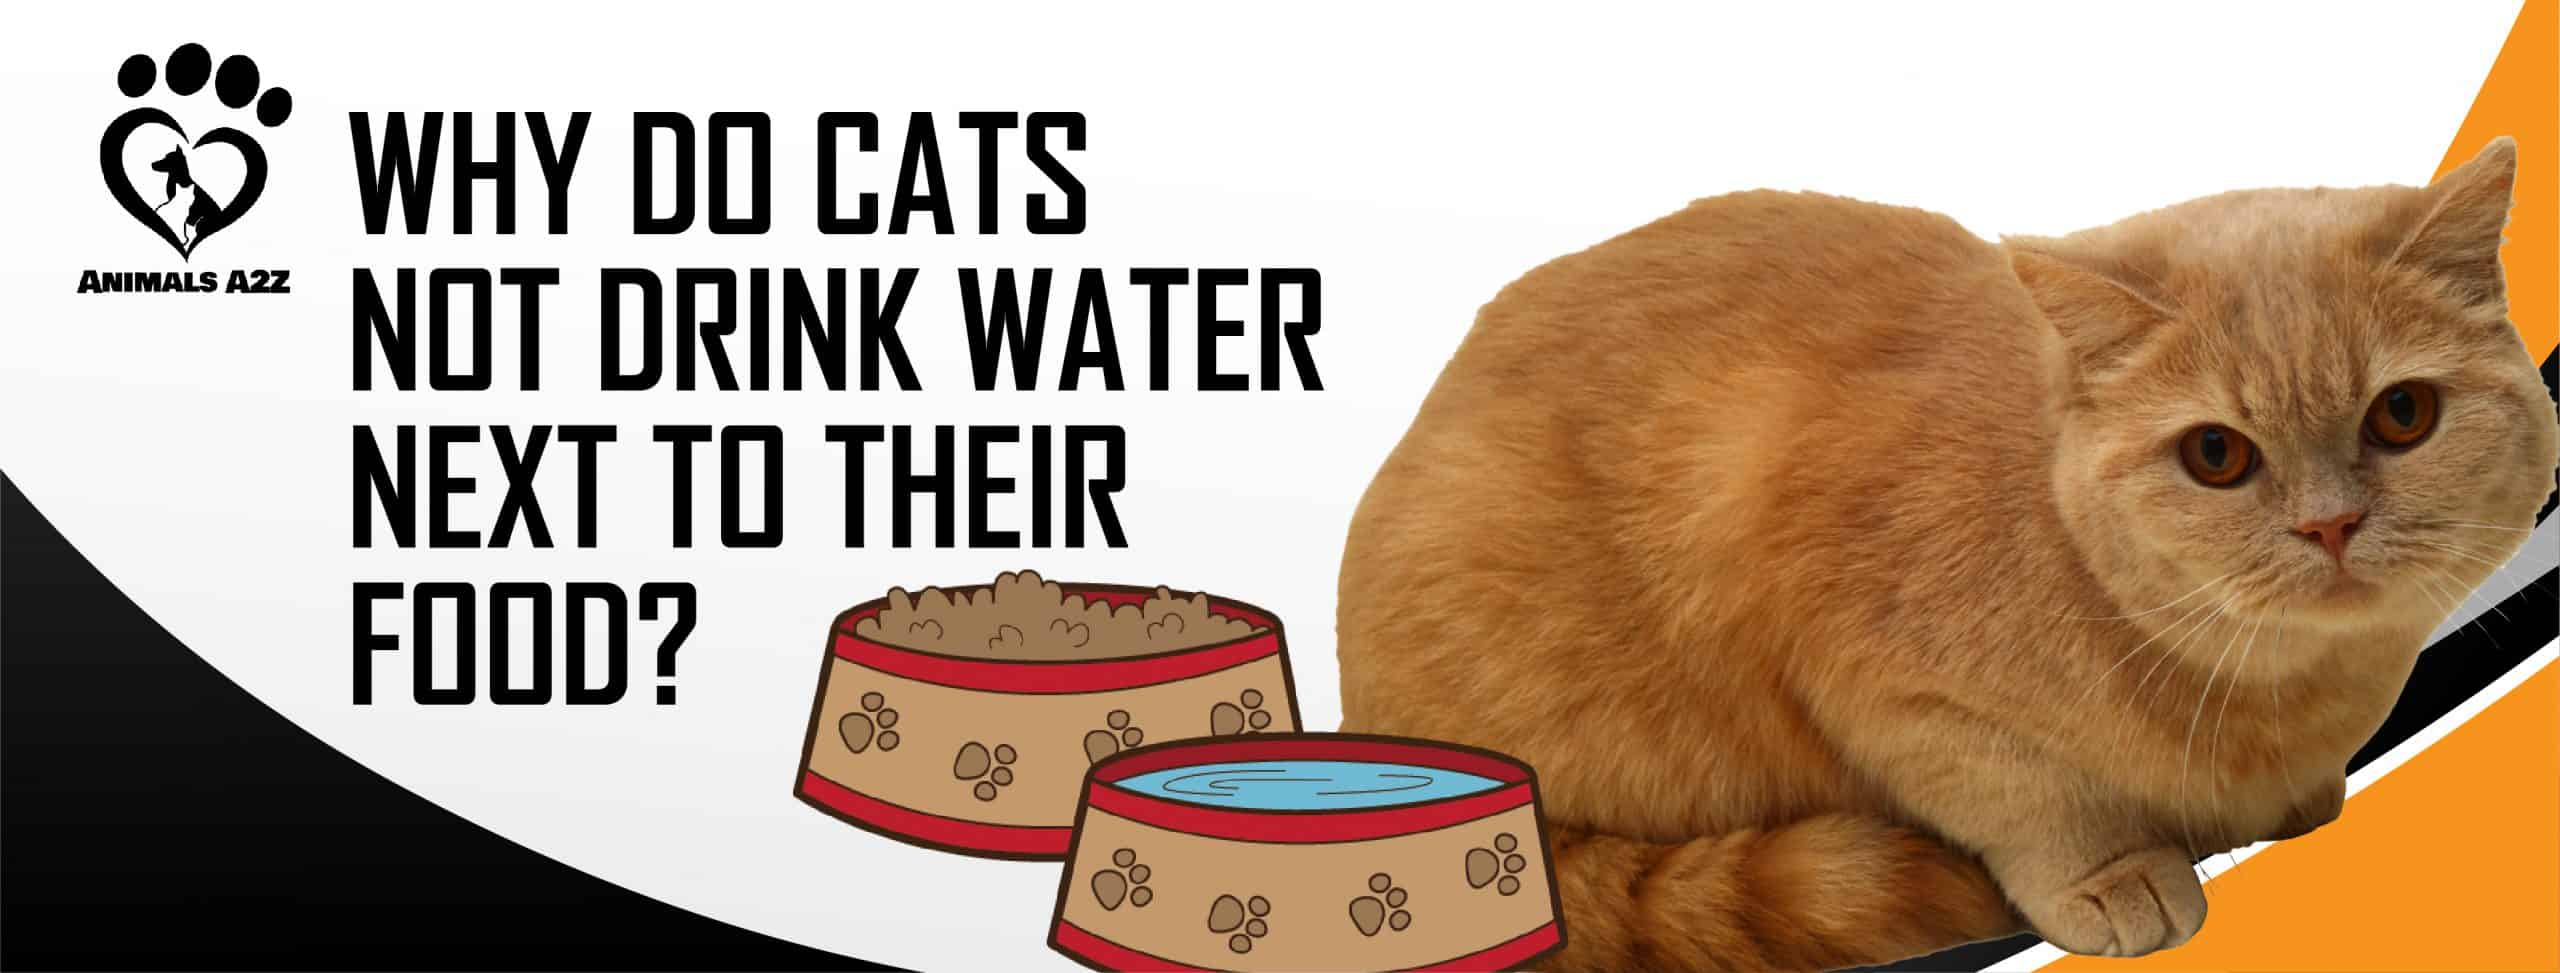 Hvorfor drikker katte ikke vand ved siden af deres madskål? [ ]